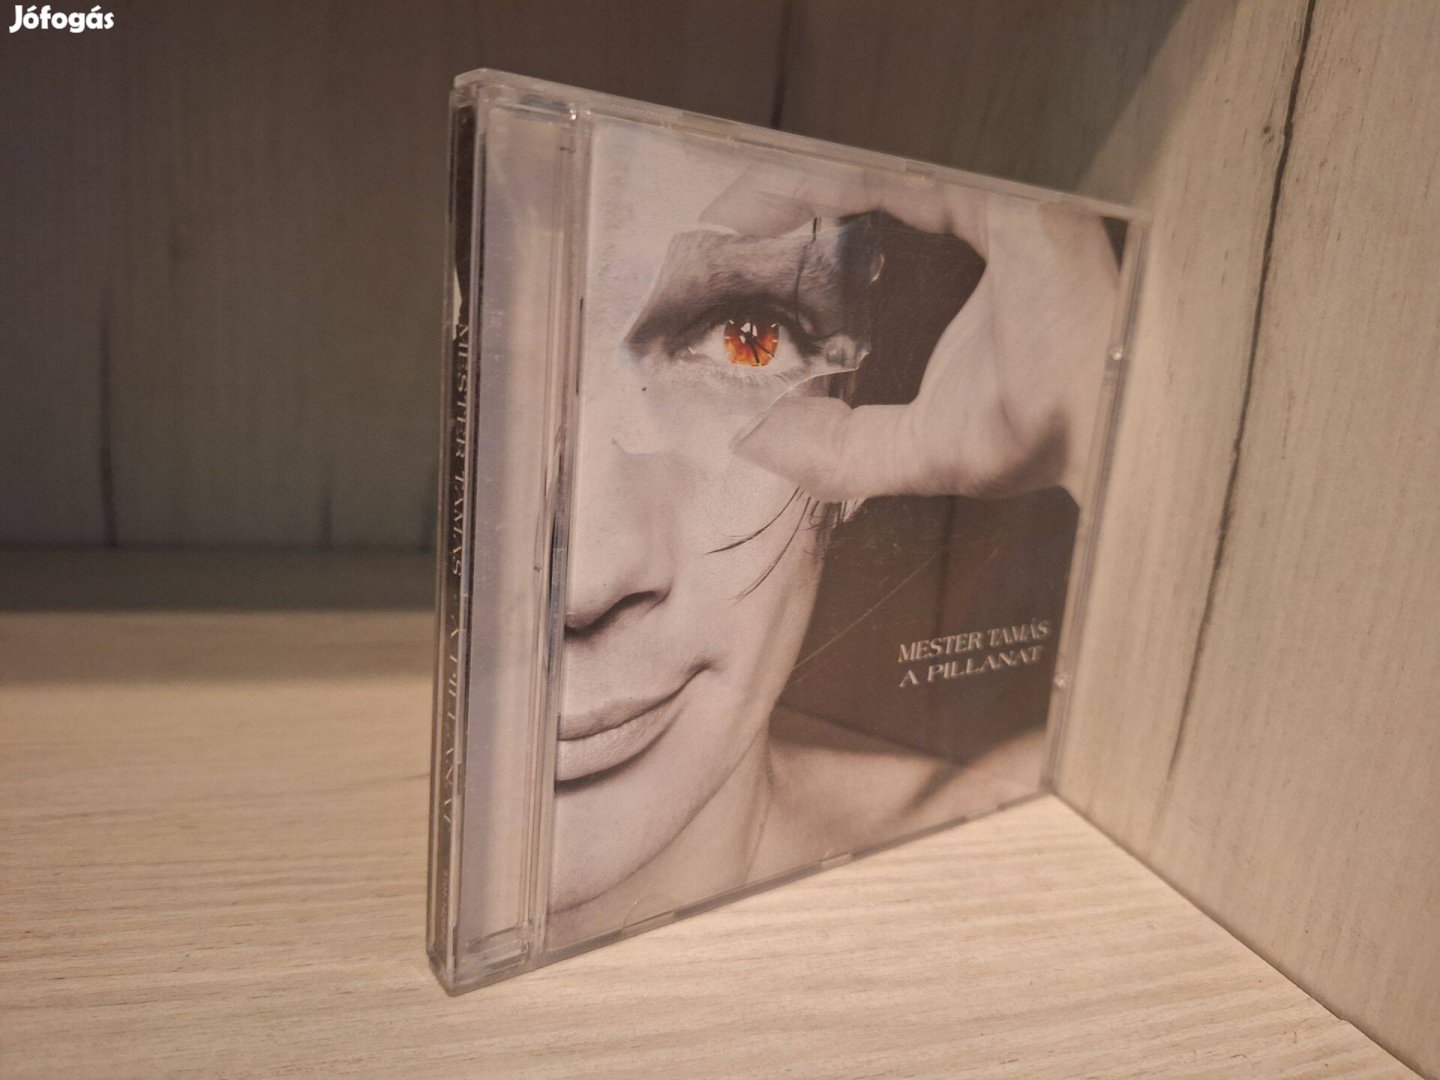 Mester Tamás - A Pillanat CD